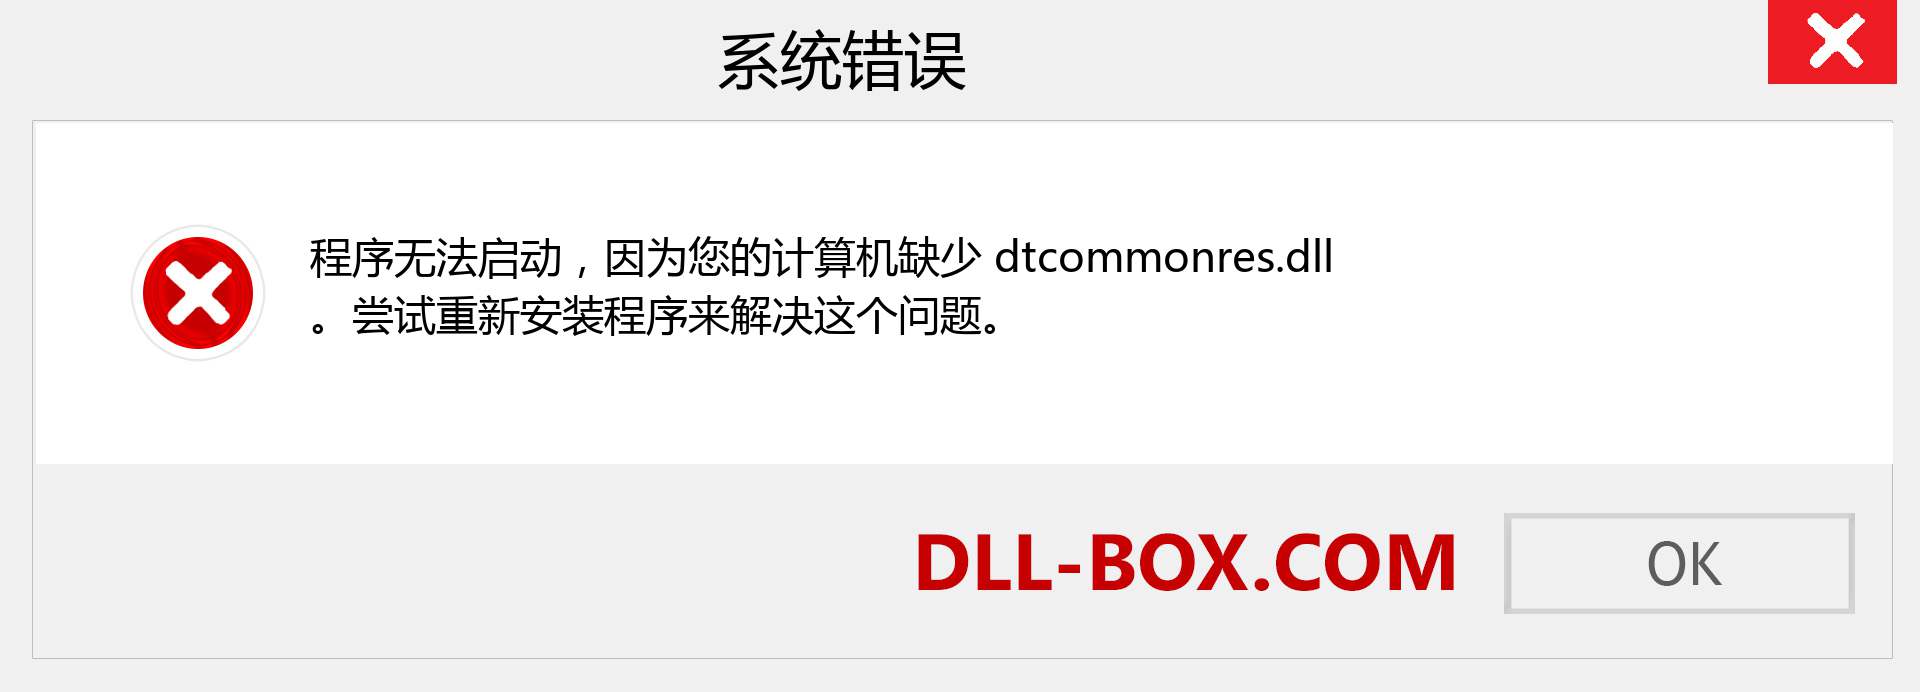 dtcommonres.dll 文件丢失？。 适用于 Windows 7、8、10 的下载 - 修复 Windows、照片、图像上的 dtcommonres dll 丢失错误